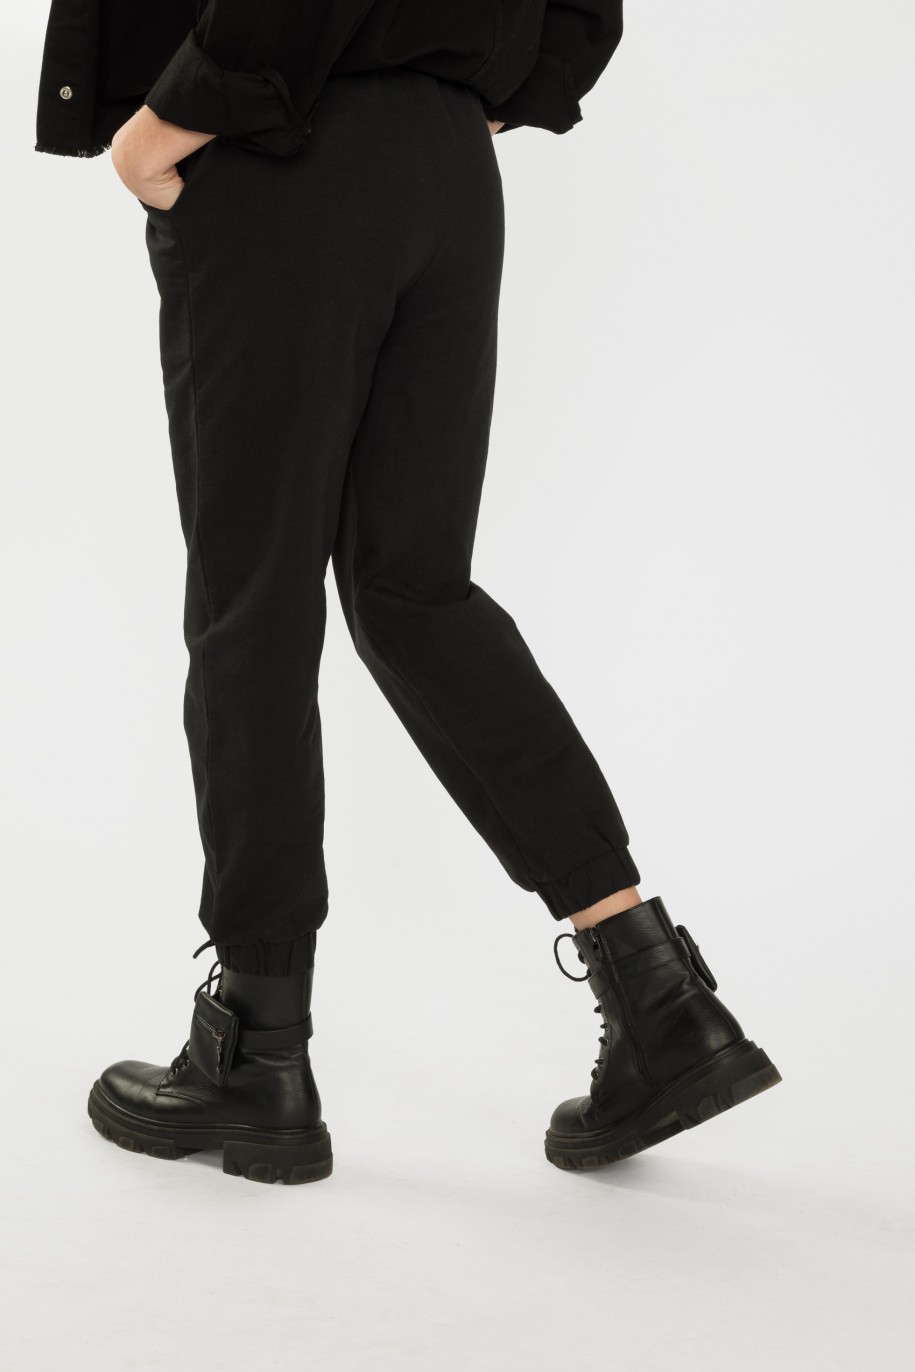 Czarne spodnie dresowe z przeszyciami - 40275